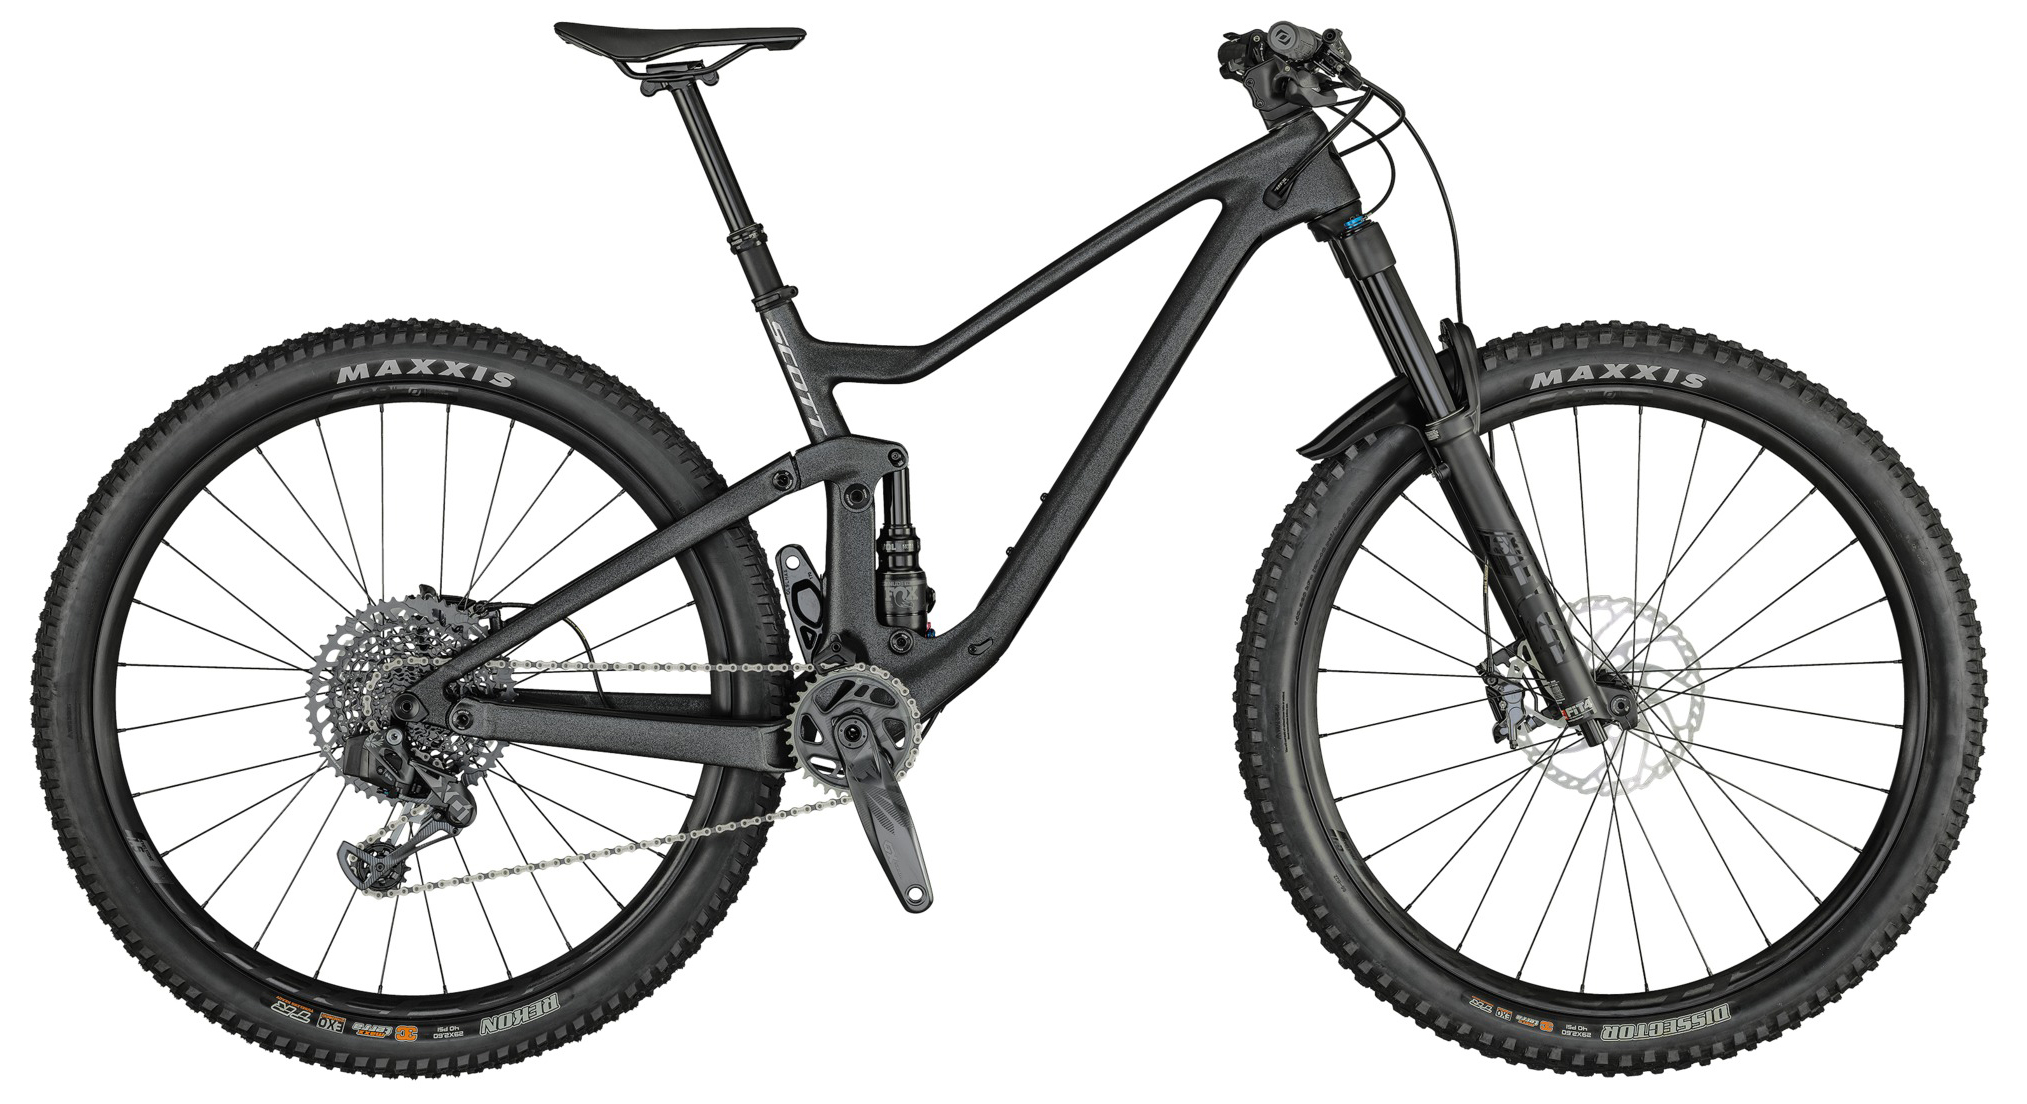  Отзывы о Двухподвесном велосипеде Scott Genius 910 AXS (2021) 2021